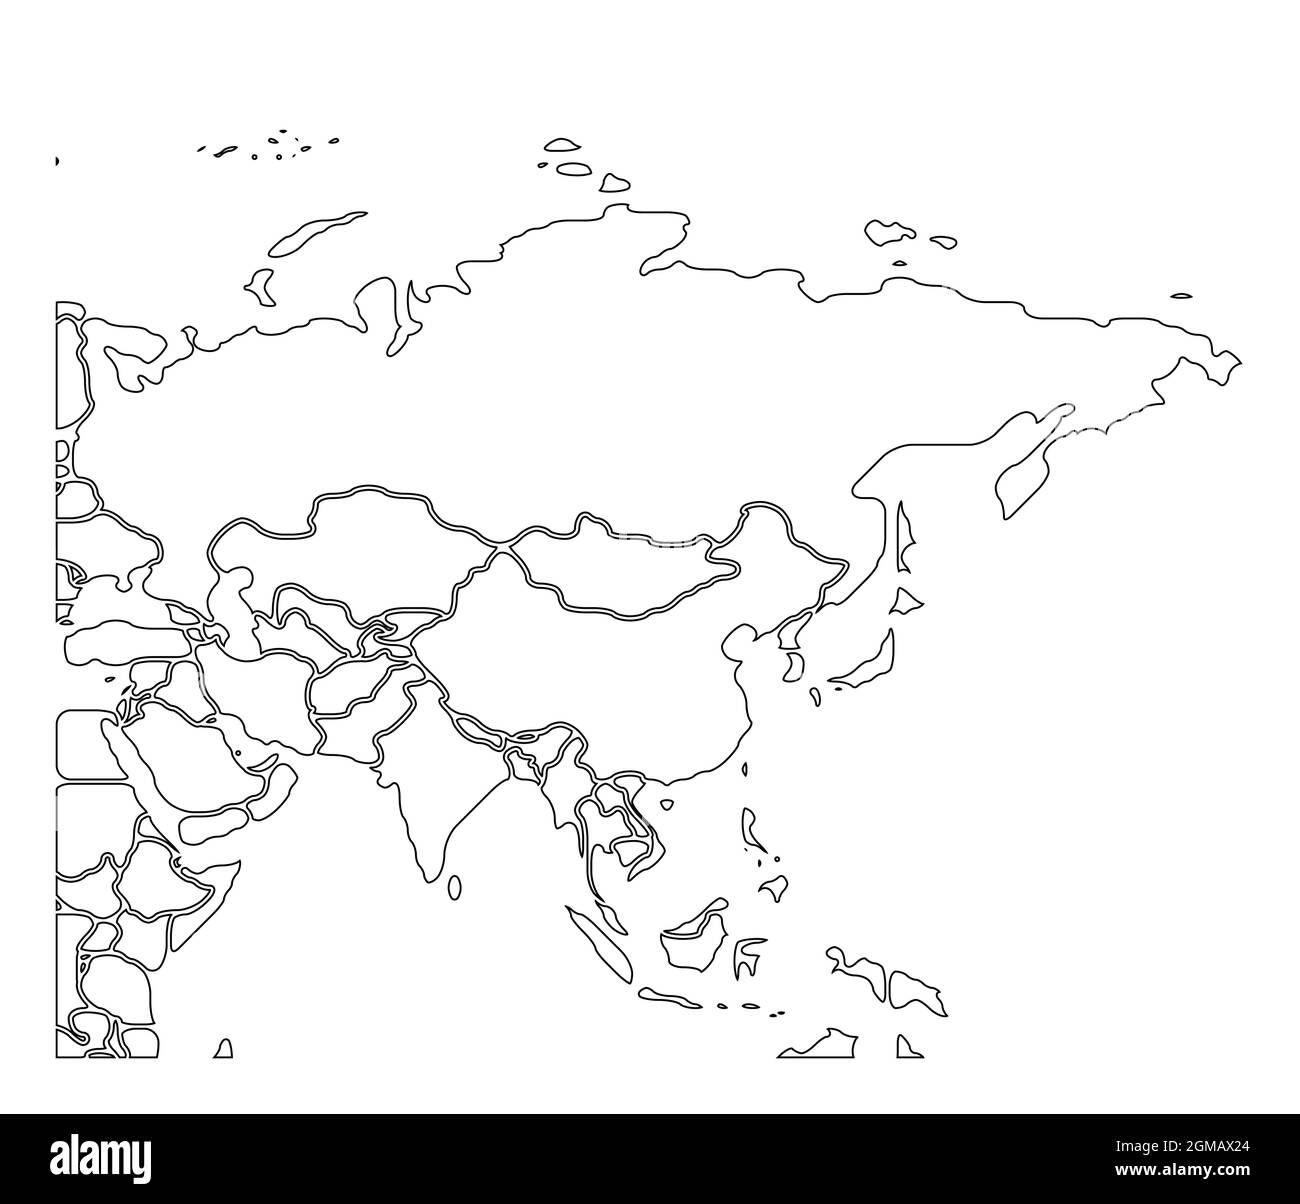 India blank map Banque d'images détourées - Alamy